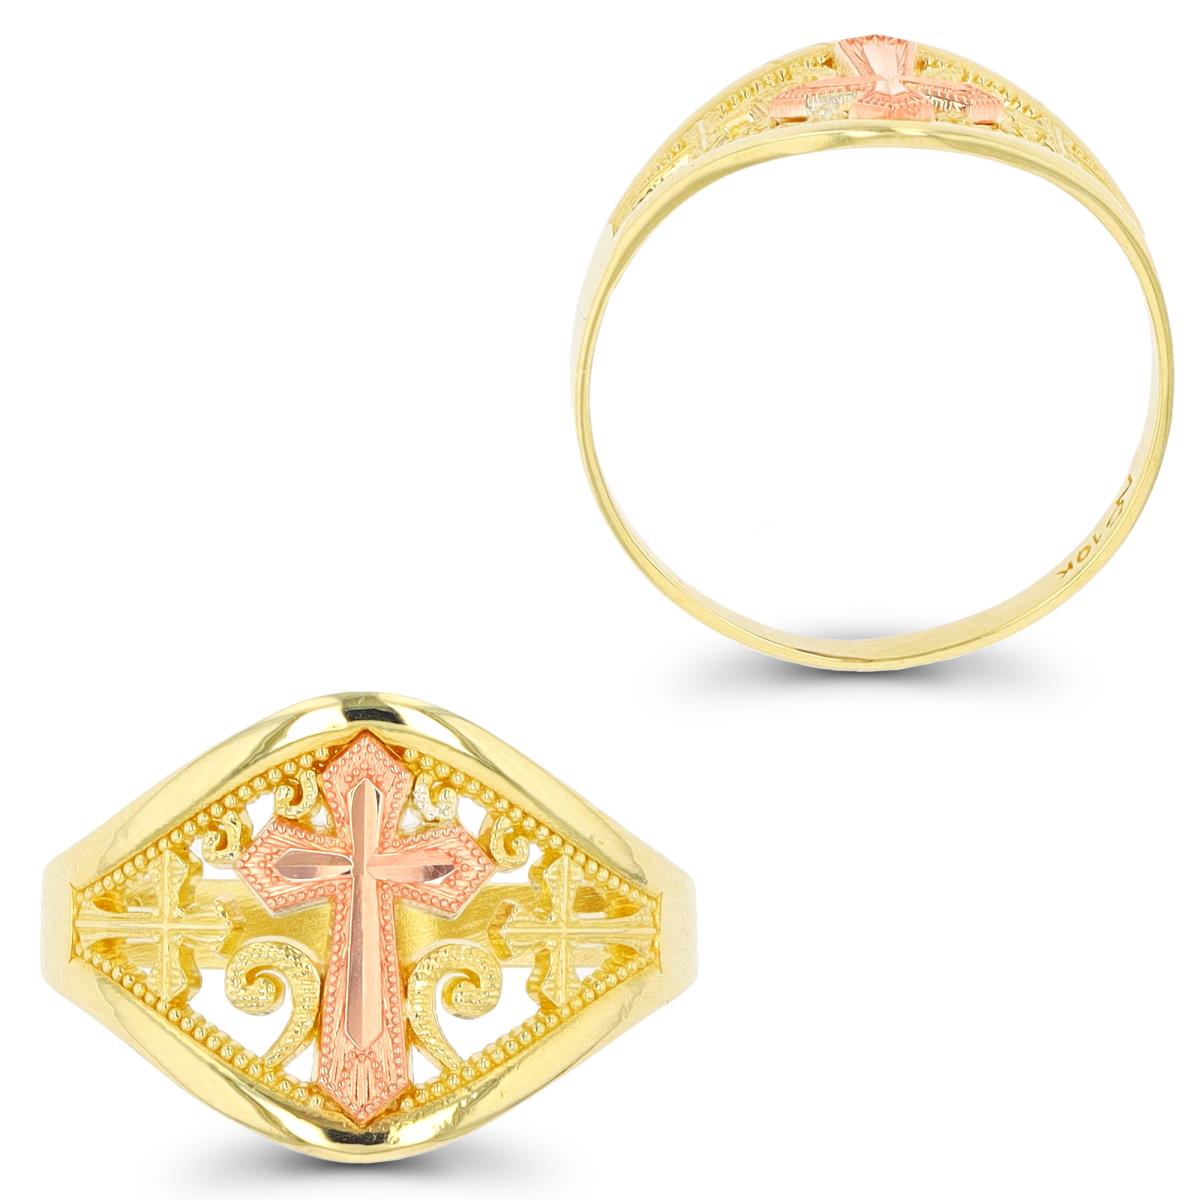 14K Yellow & Rose Gold Milgrain & DC Cross Religious Ring